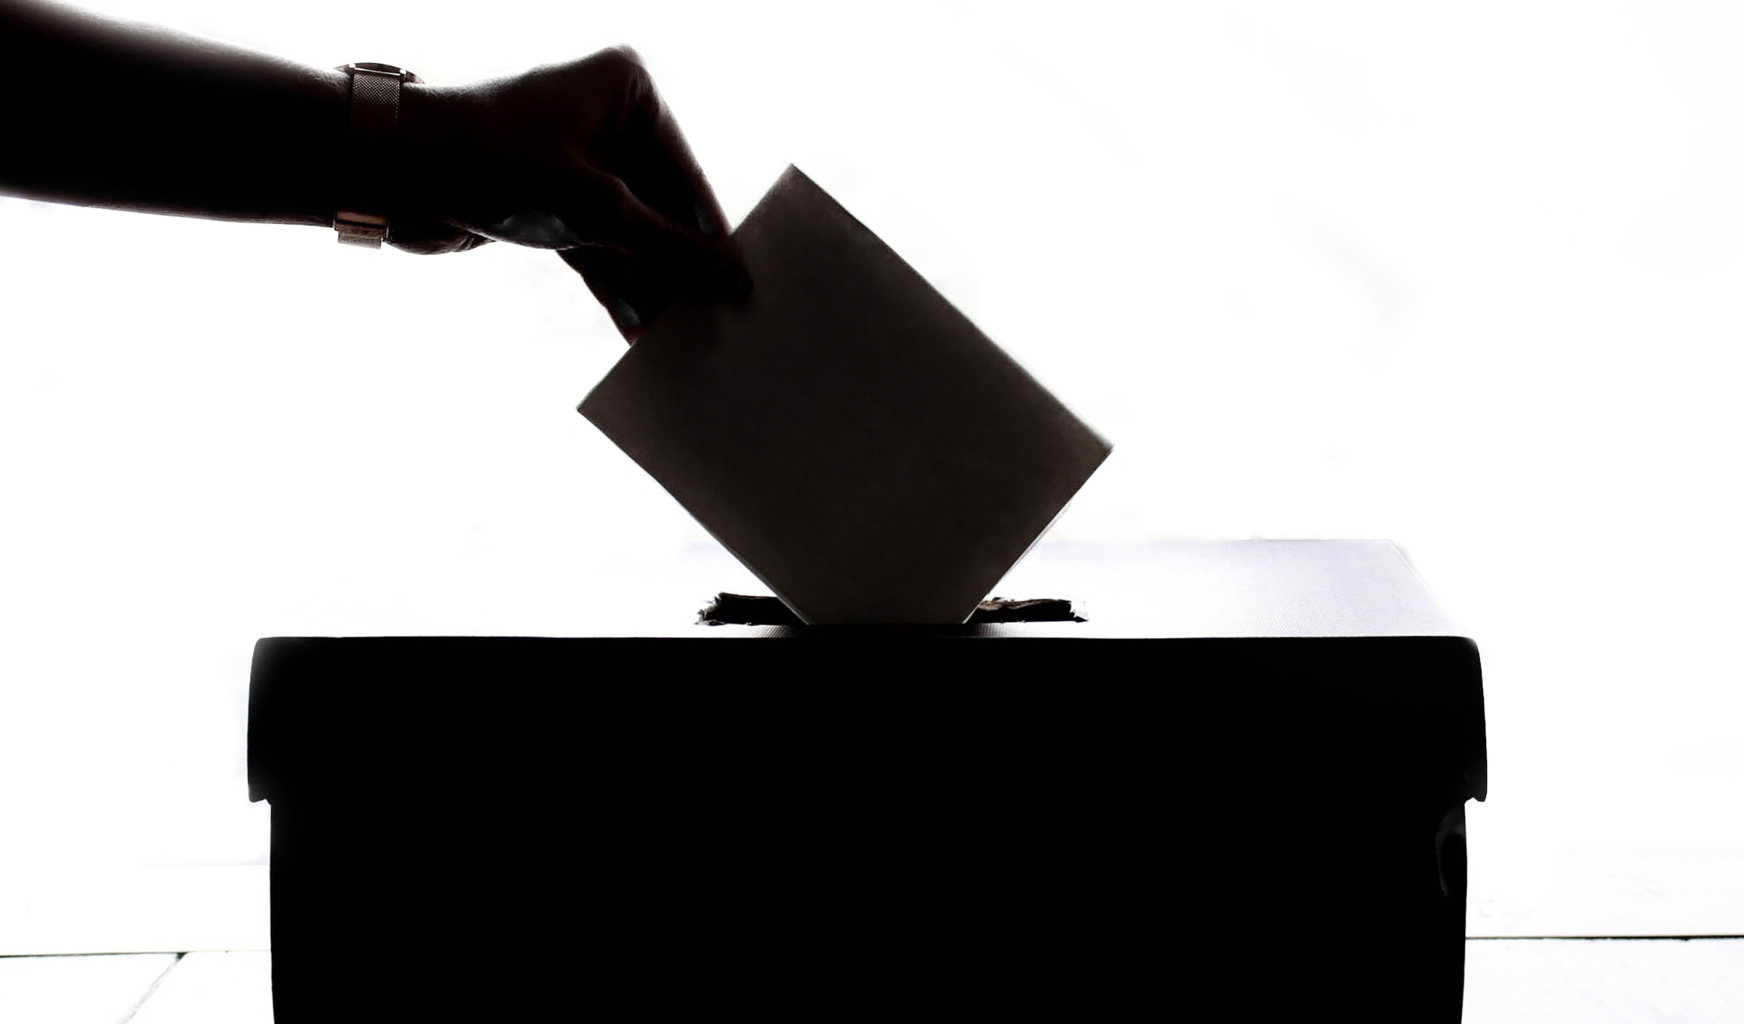 Das Bild zeigt eine Hand wie sie einen Wahlzettel in eine Wahlurne steckt. Die Hand und die Box liegen im Schatten